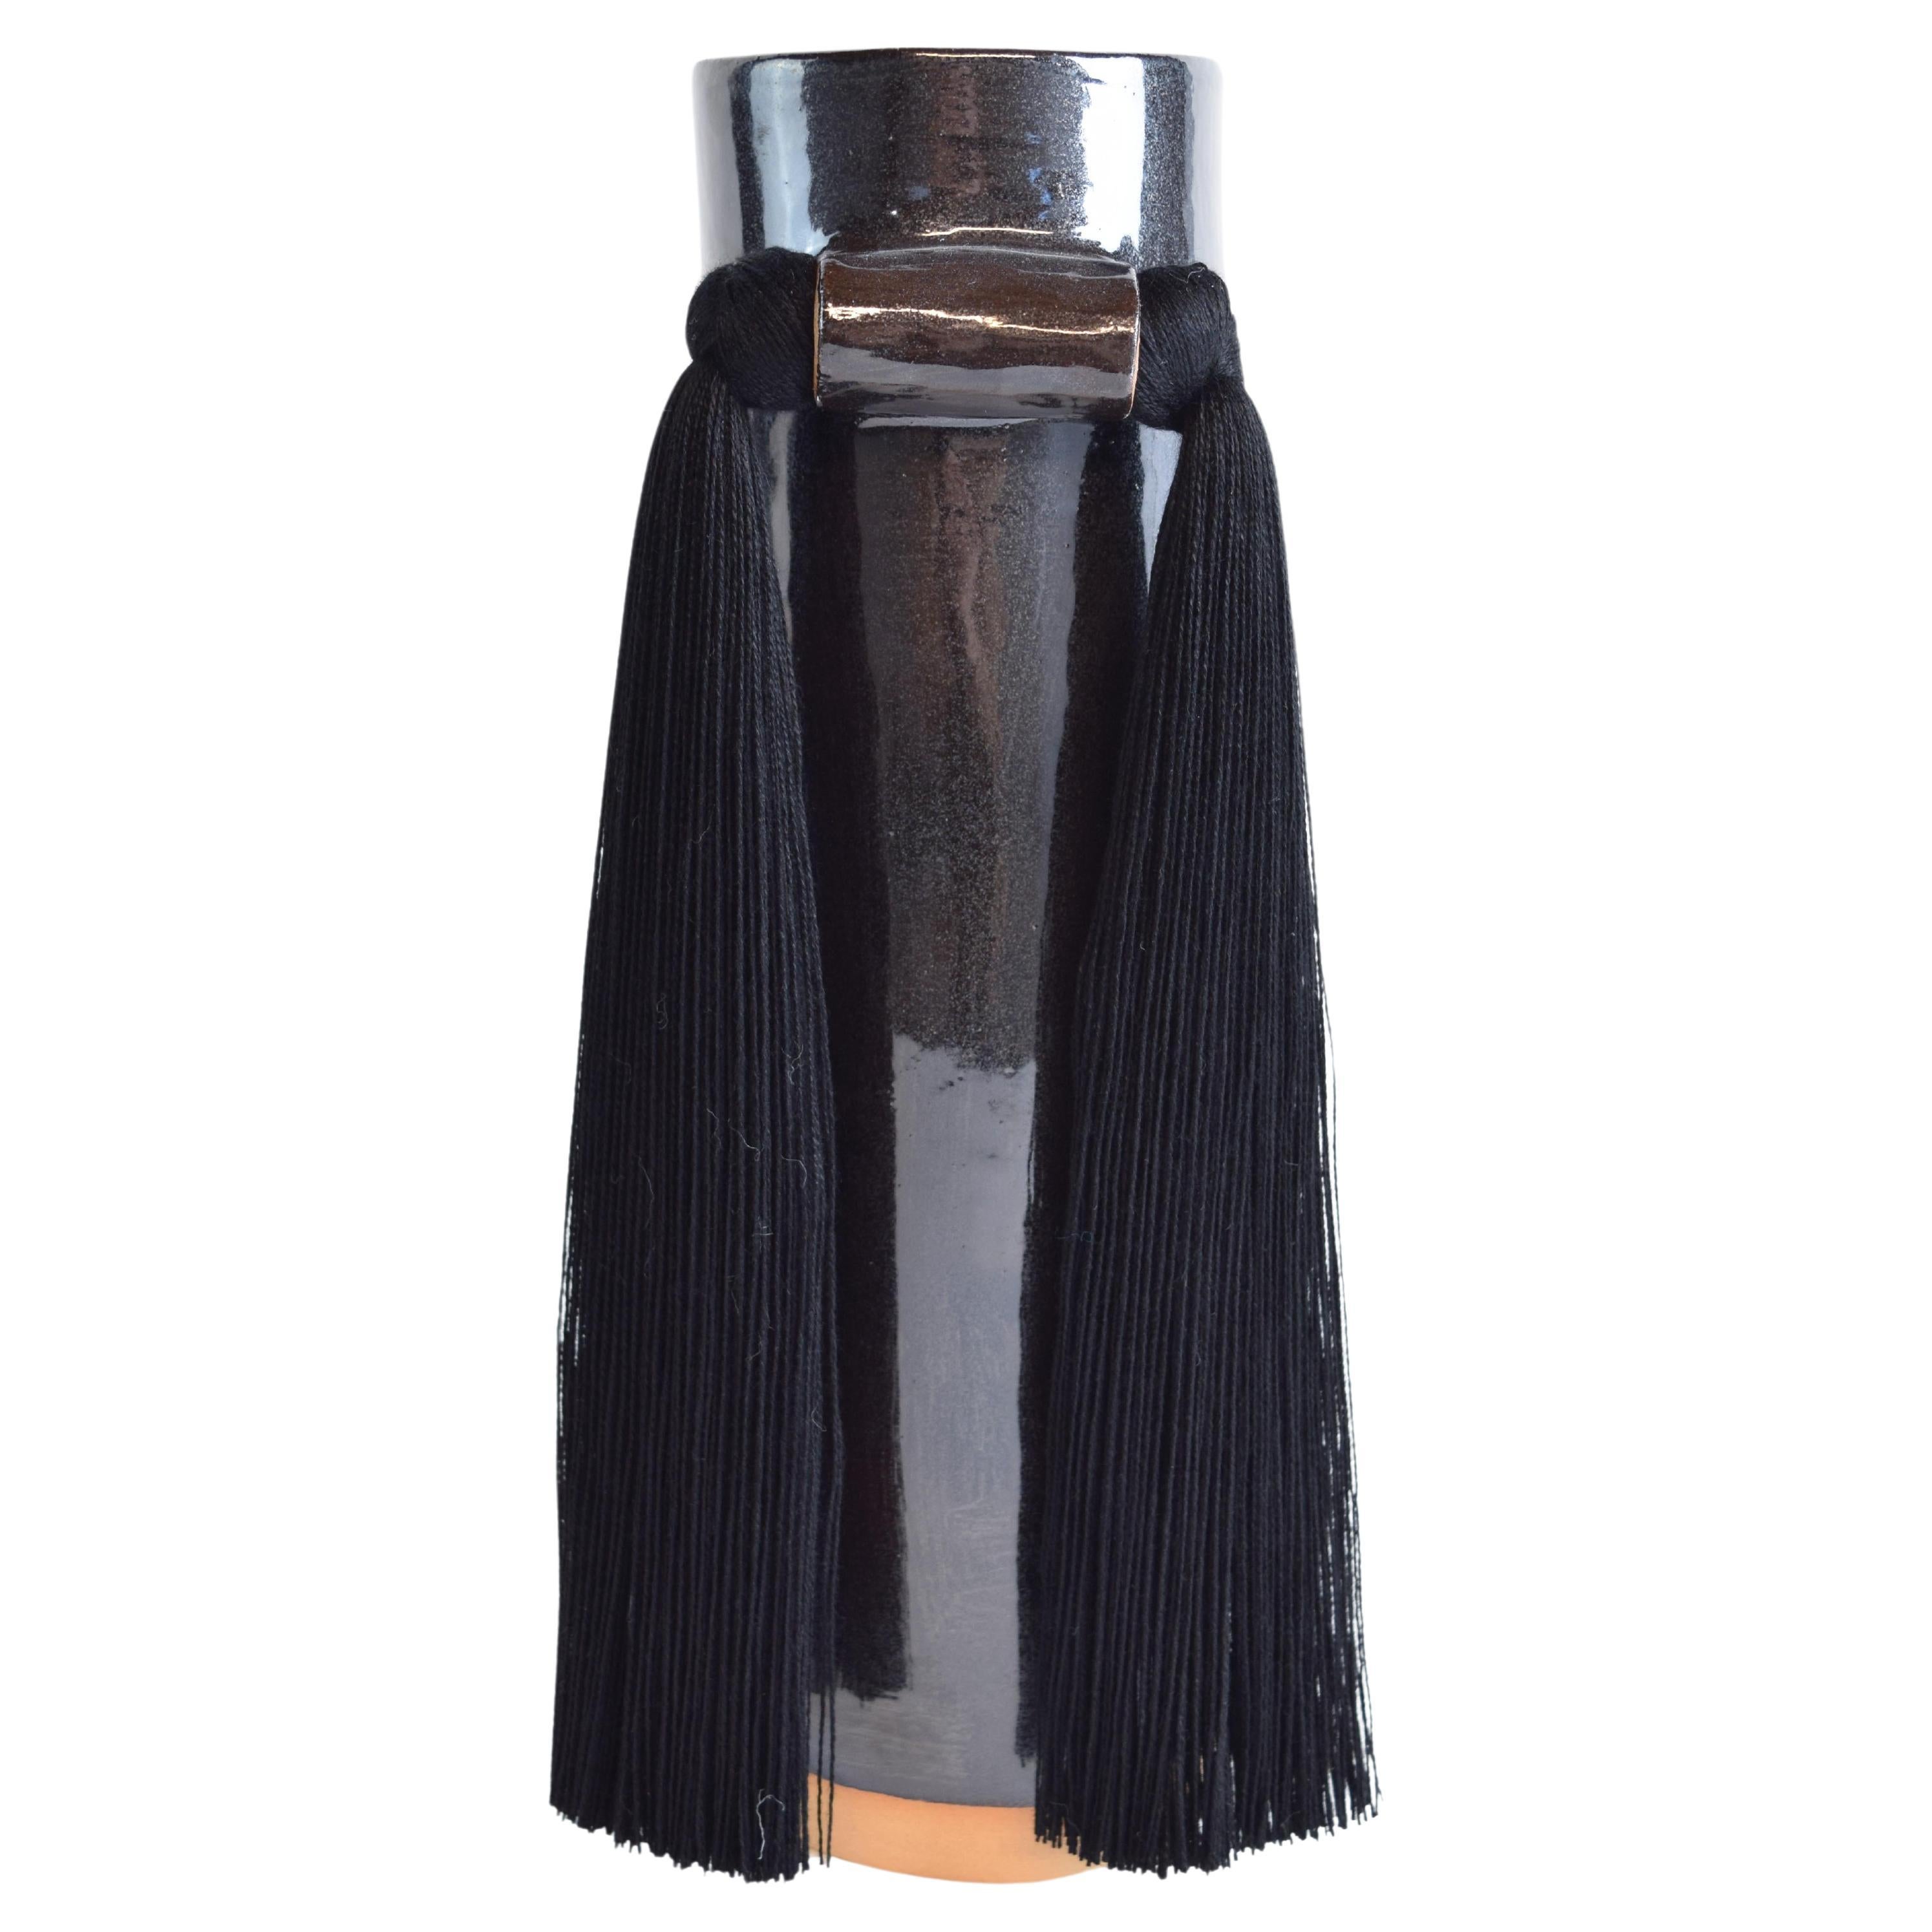 Handmade Ceramic Vase #531 in Black Glaze with Black Tencel Fringe For Sale